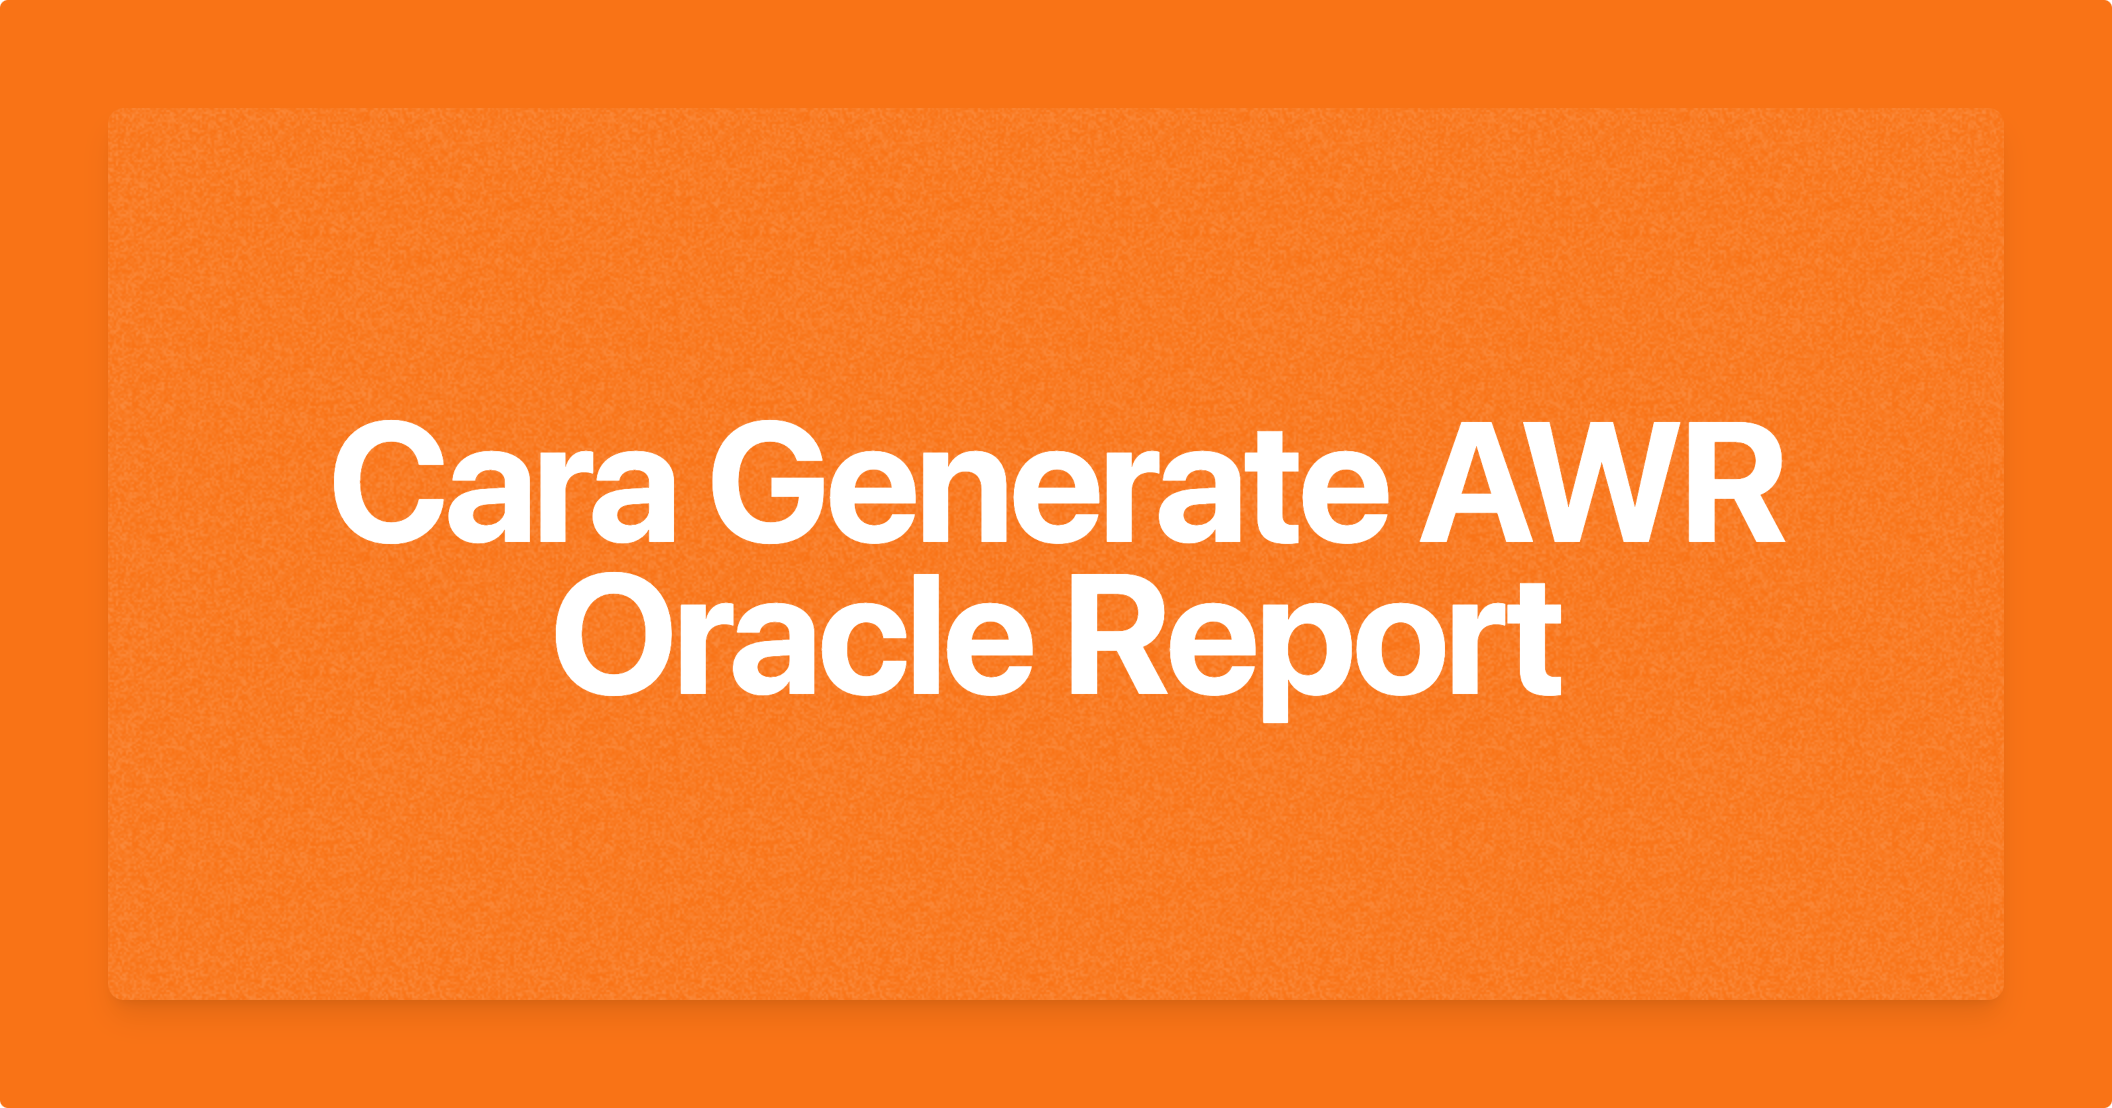 Cara Generate AWR Oracle Report
